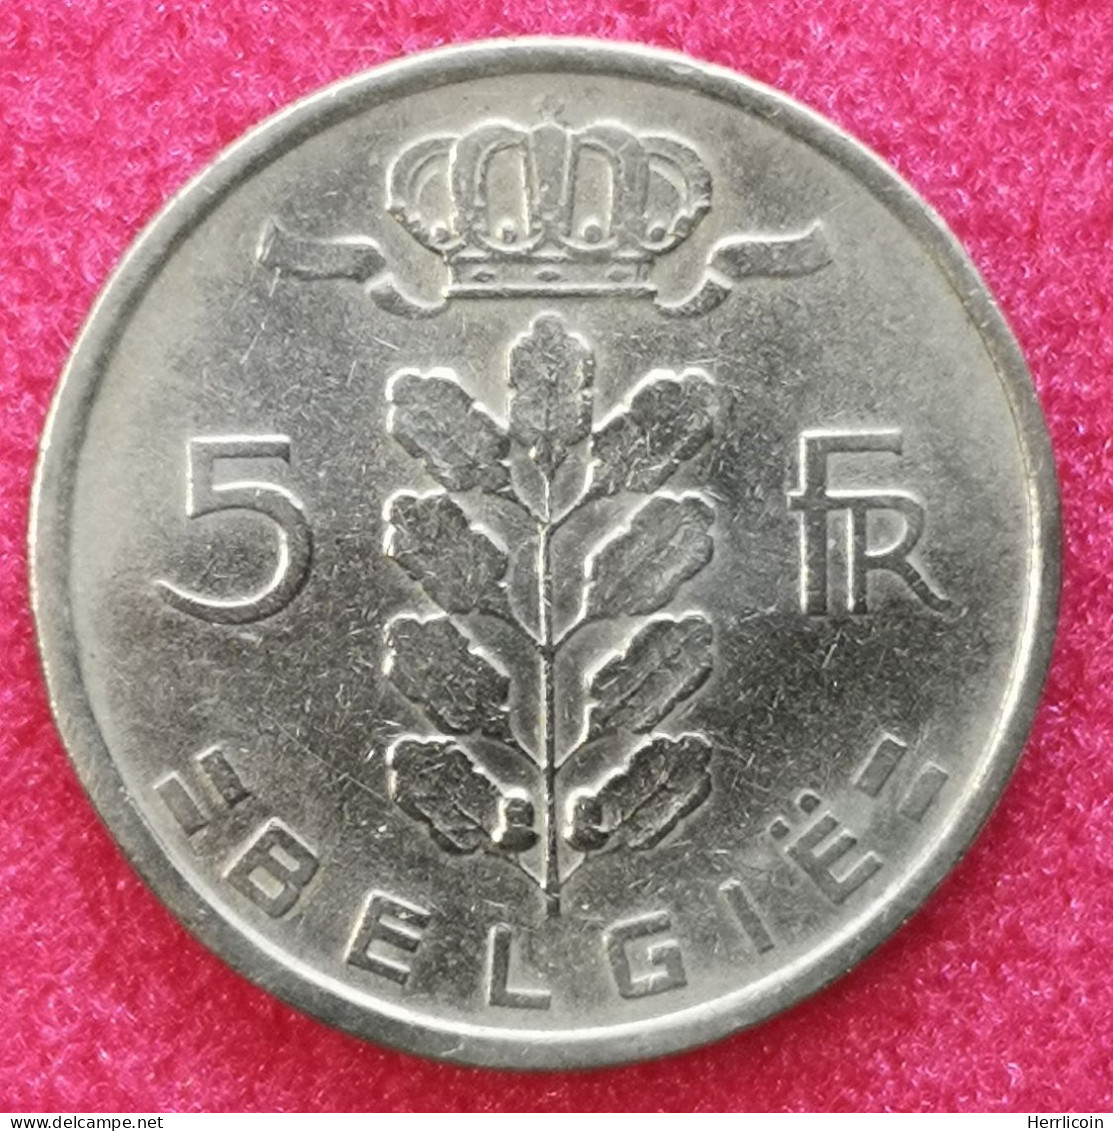 Monnaie Belgique - 1949 - 5 Francs - Type Cérès En Néerlandais - 5 Francs